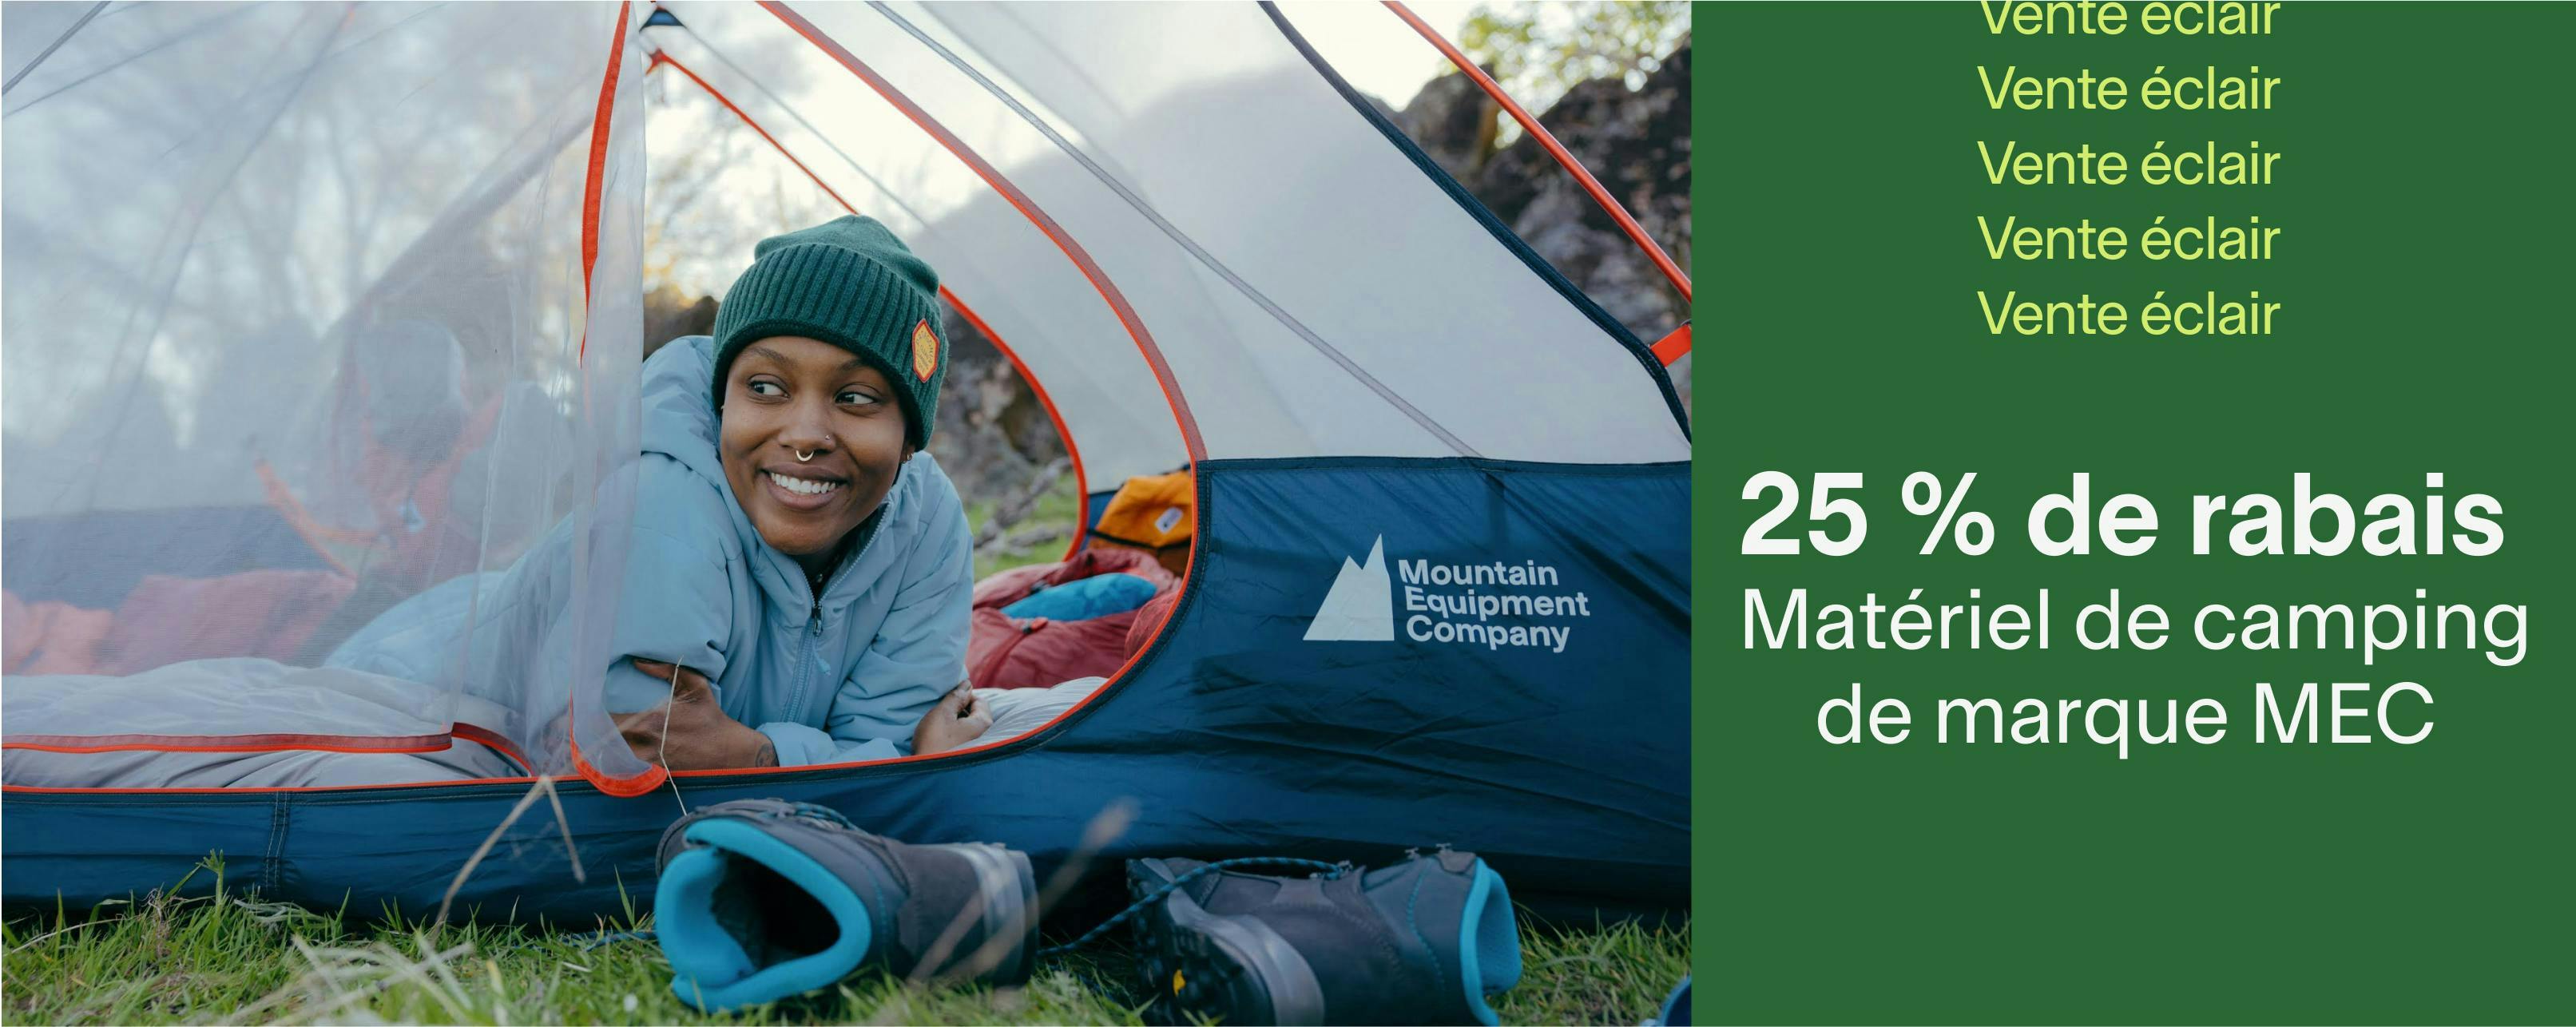 C’est l’occasion idéale d’économiser pour compléter votre ensemble de camping. Styles sélectionnés, jusqu’au 3 mai.